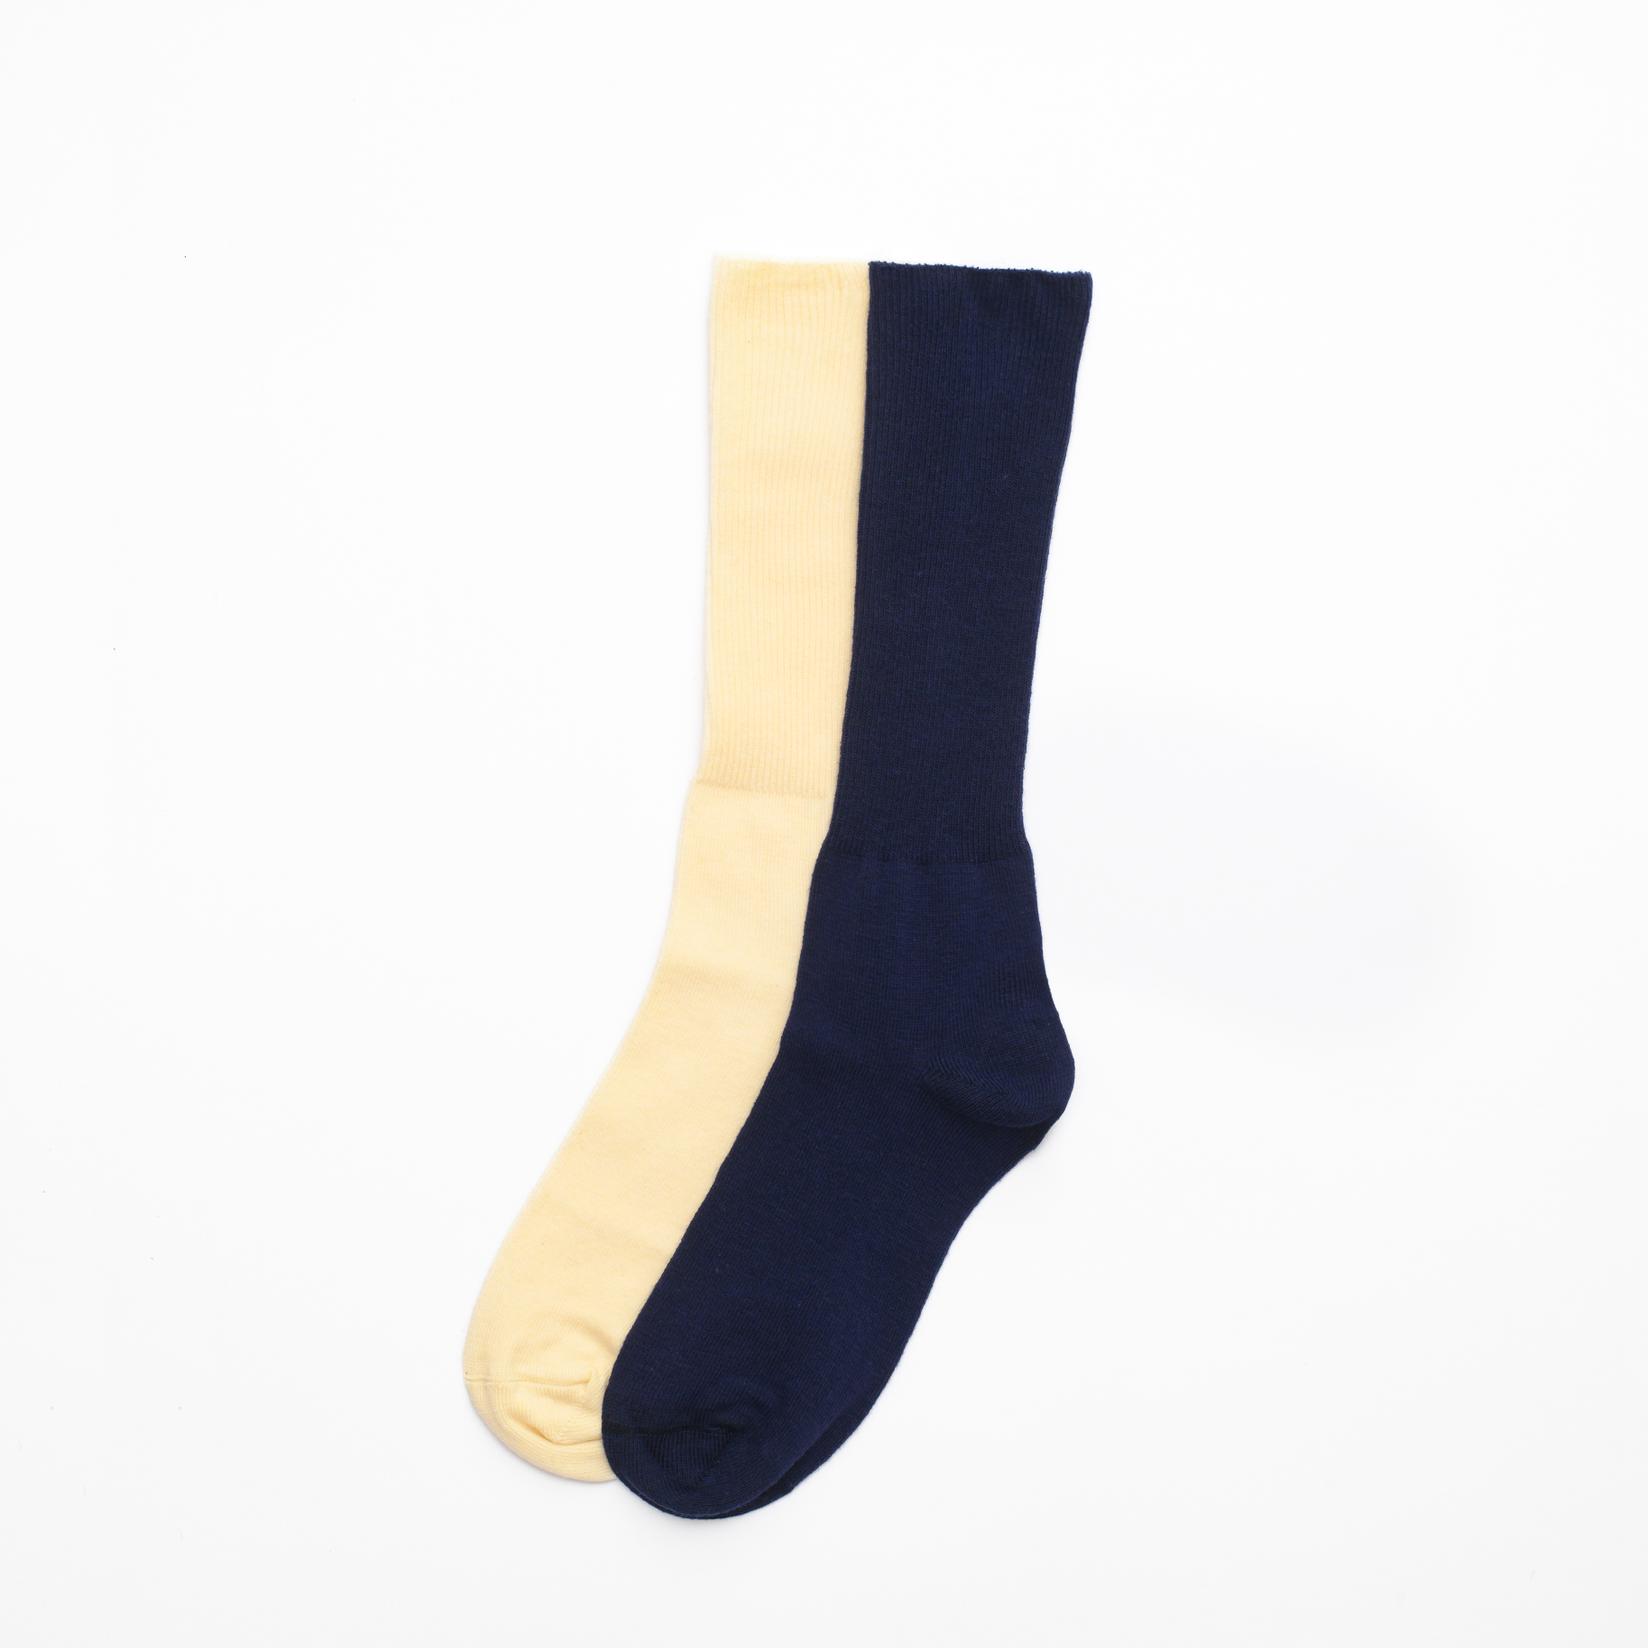 Selected image for BOX SOCKS Set dečijih čarapa 4/1 teget i krem